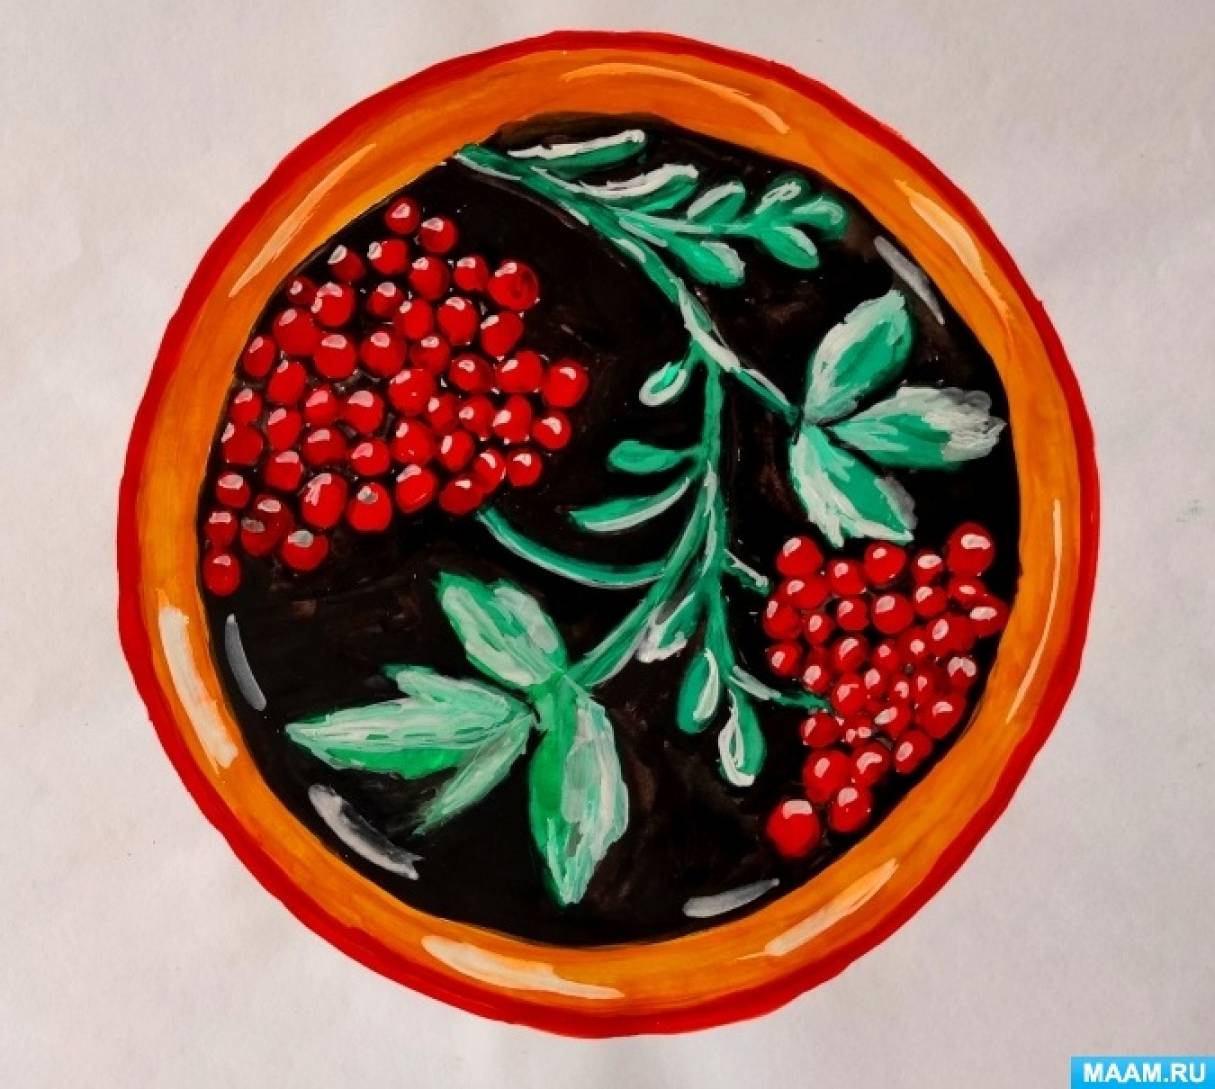 Сахарные ягодки своими руками легко и просто Морозные ягоды для украшений и декора